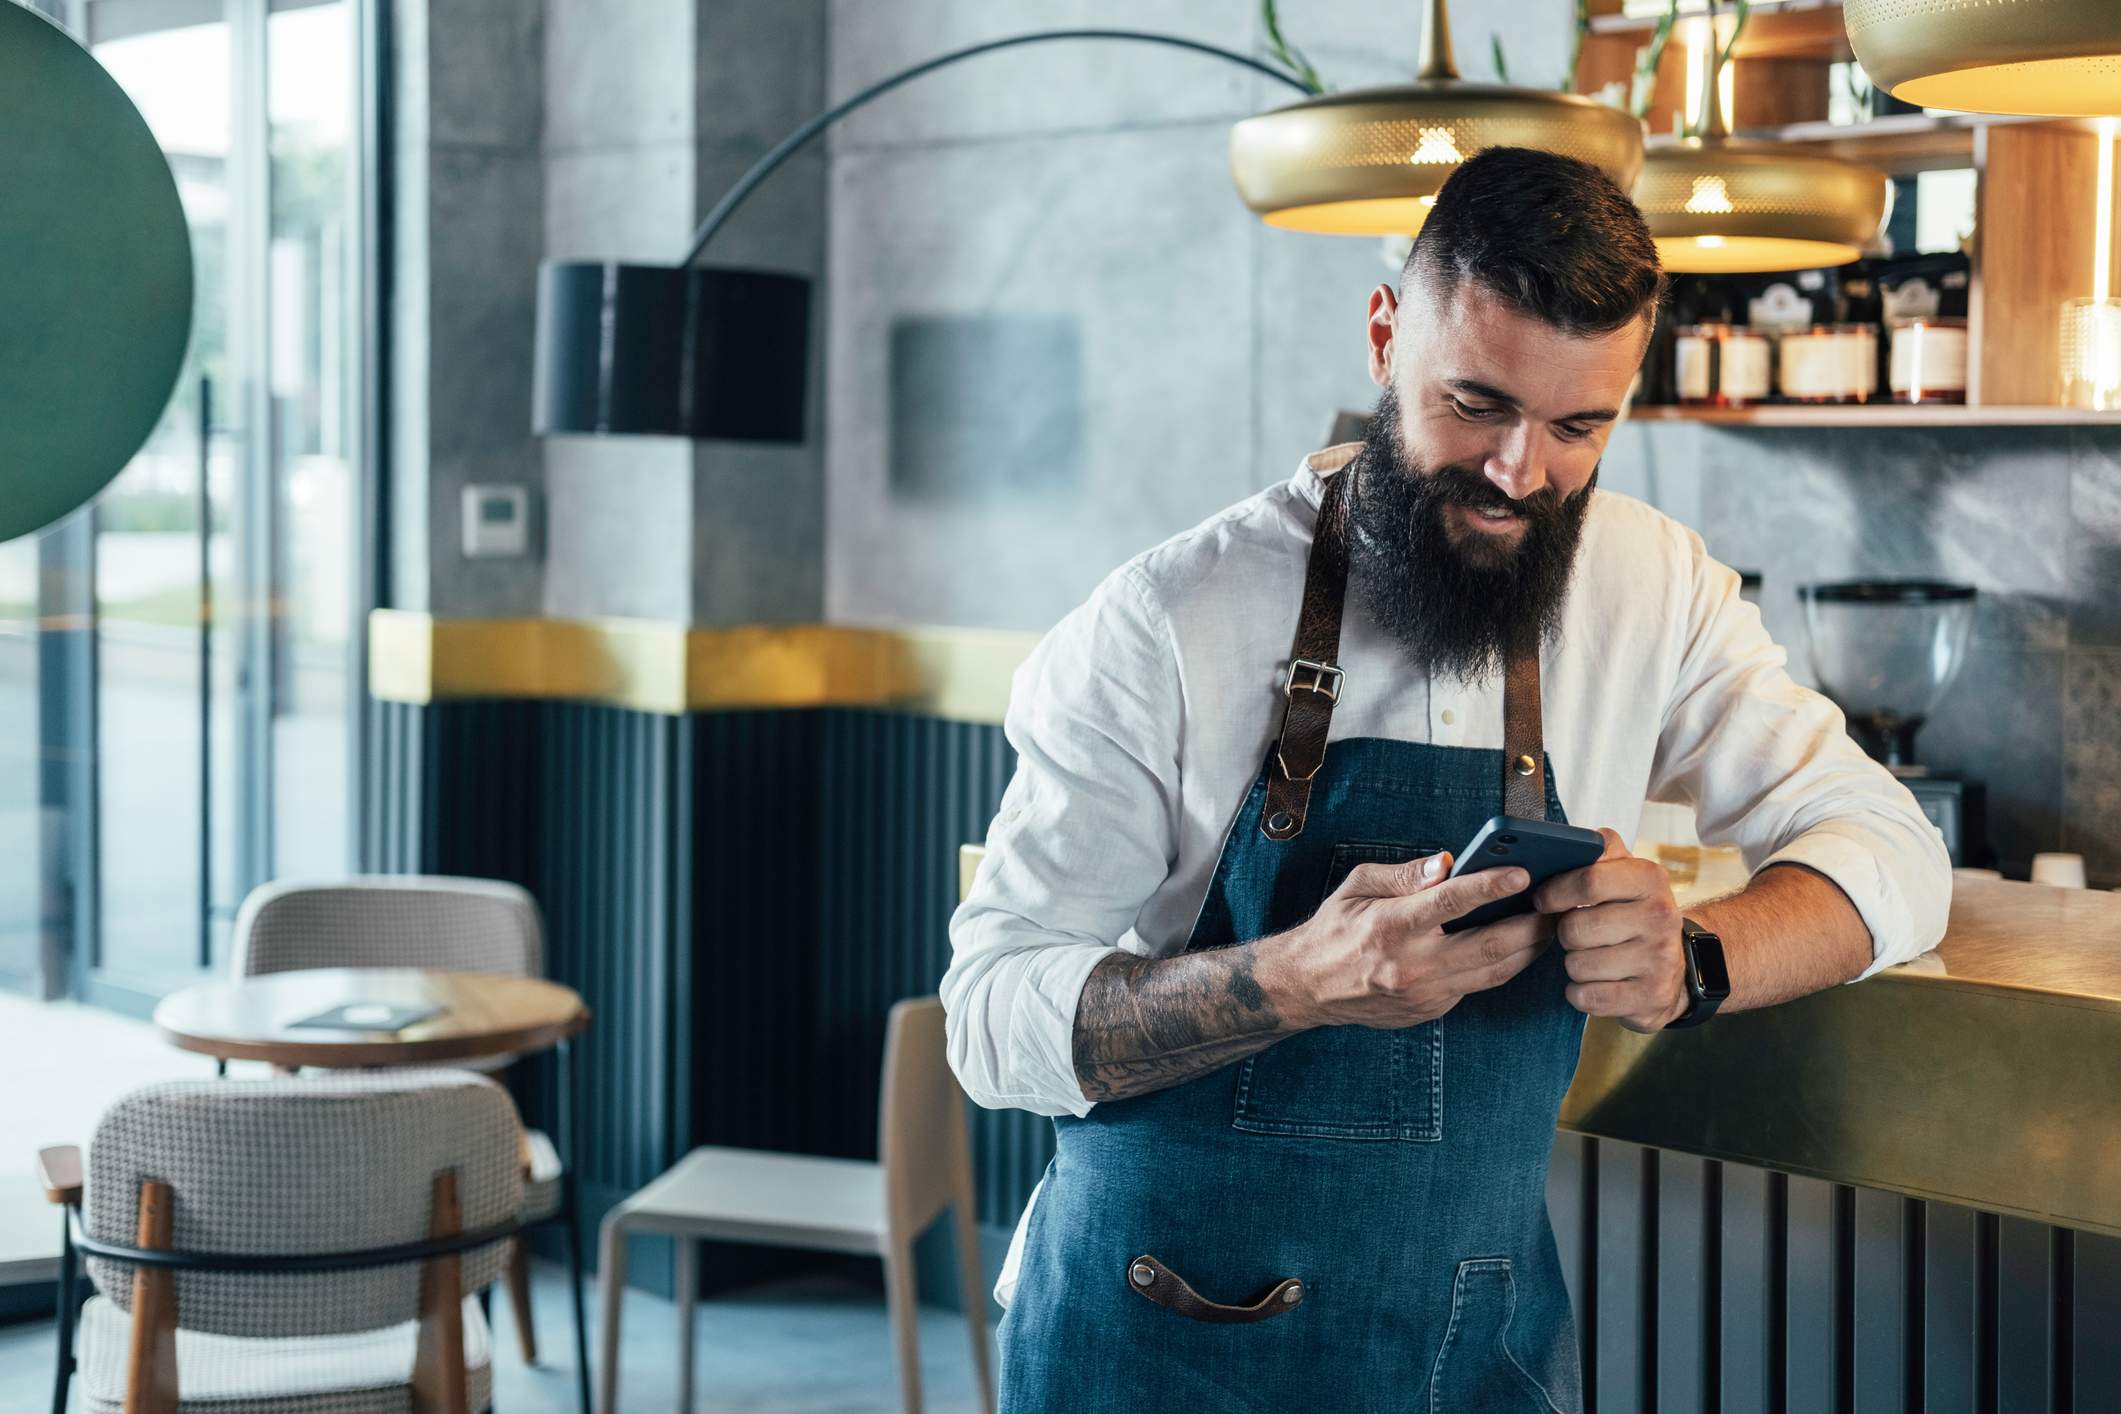 L'image représente une personne appuyée sur un comptoir de restaurant et utilisant son téléphone portable.